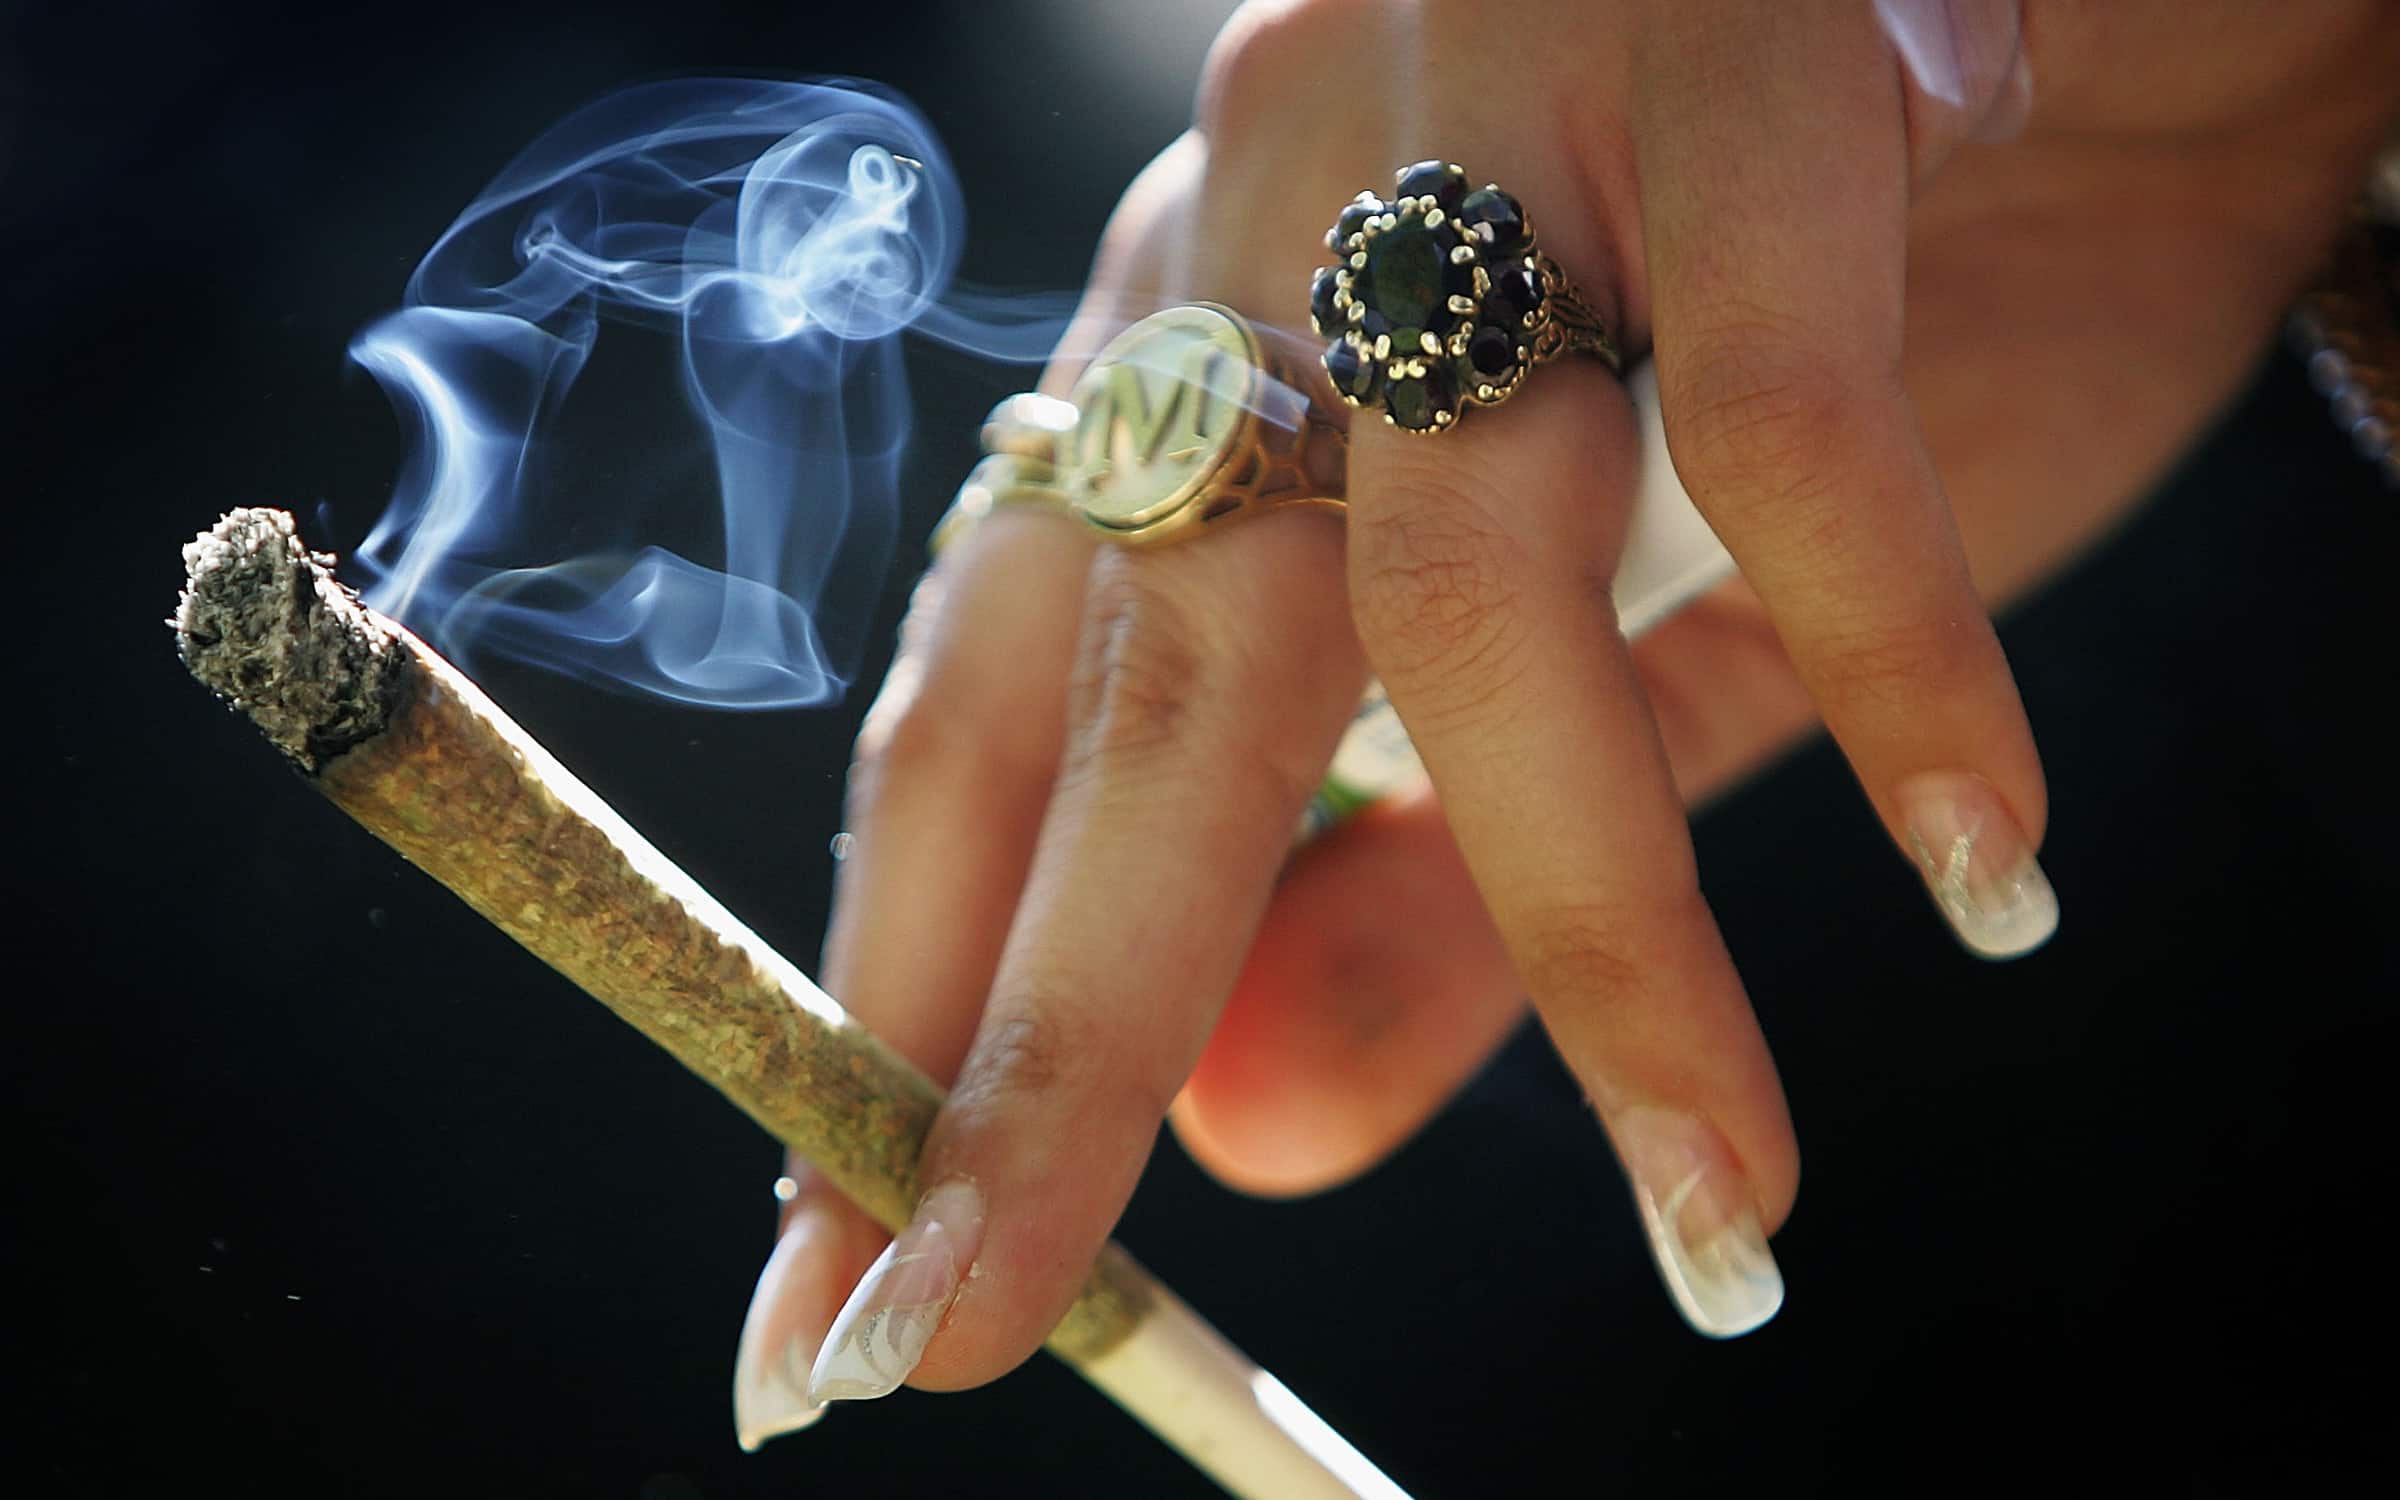 Smoking Joint Marijuana and Women